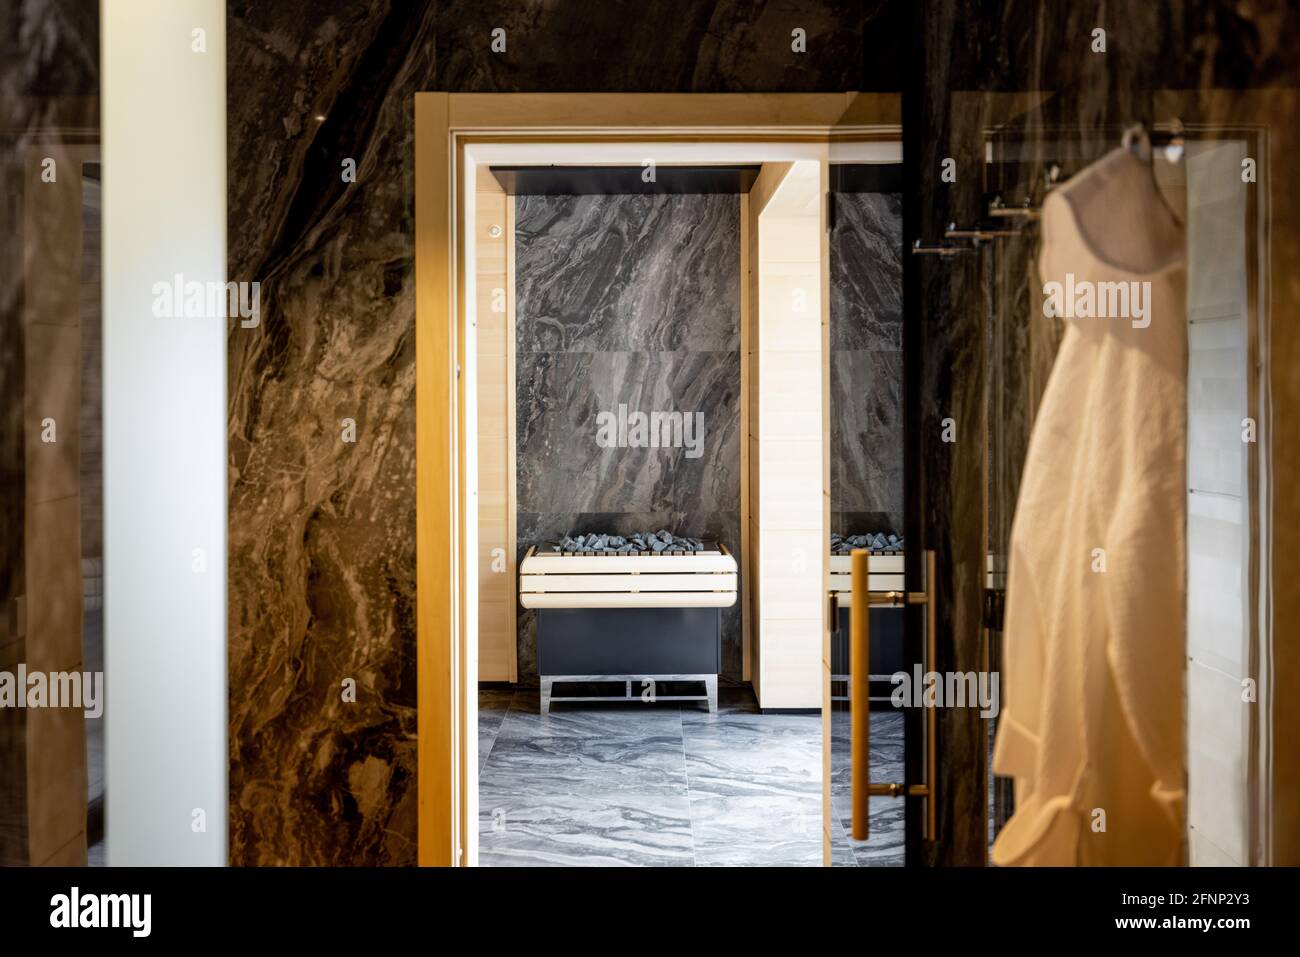 Interieur eines luxuriösen Spa-Wellnesscenters mit Sauna. Stockfoto